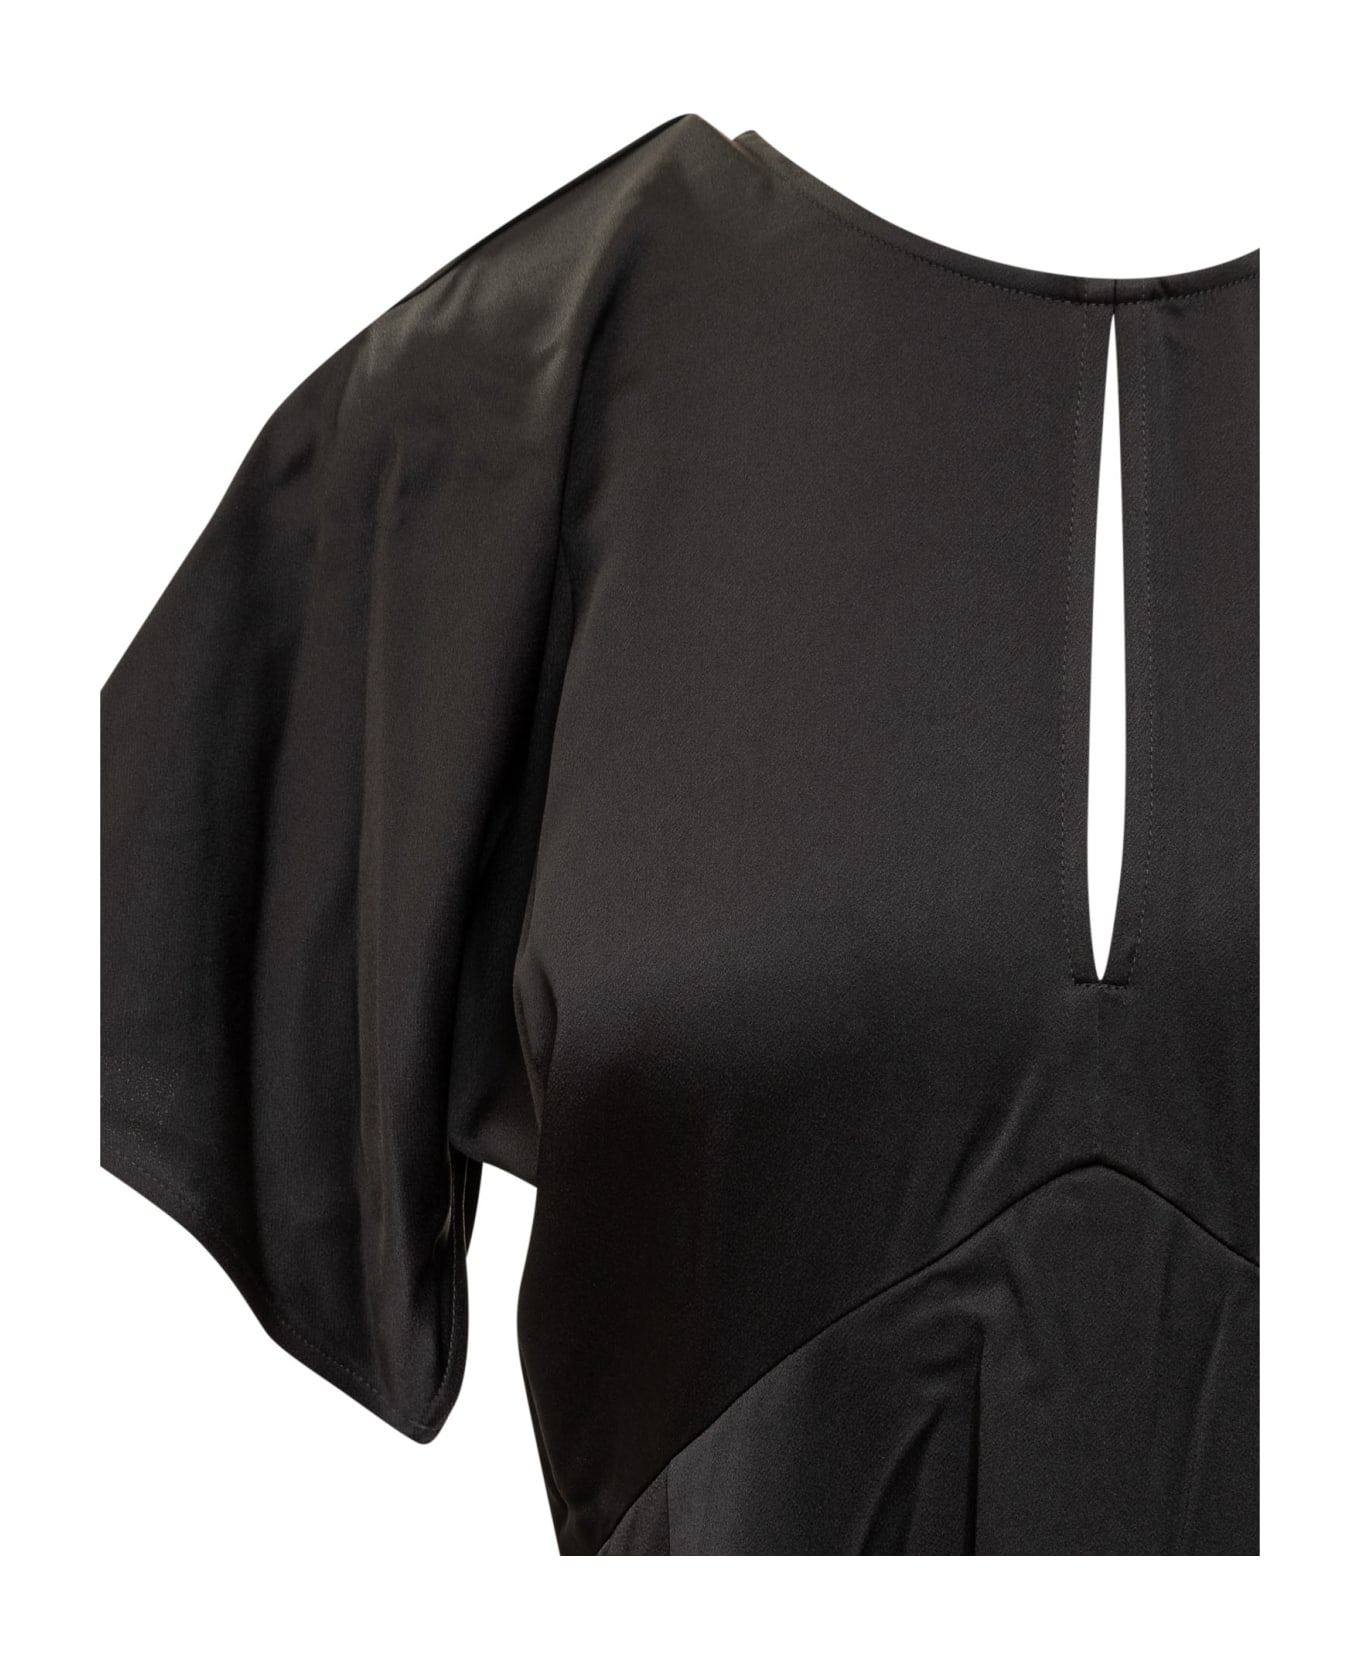 MICHAEL Michael Kors Flutter Short Sleeve Midi Dress - BLACK